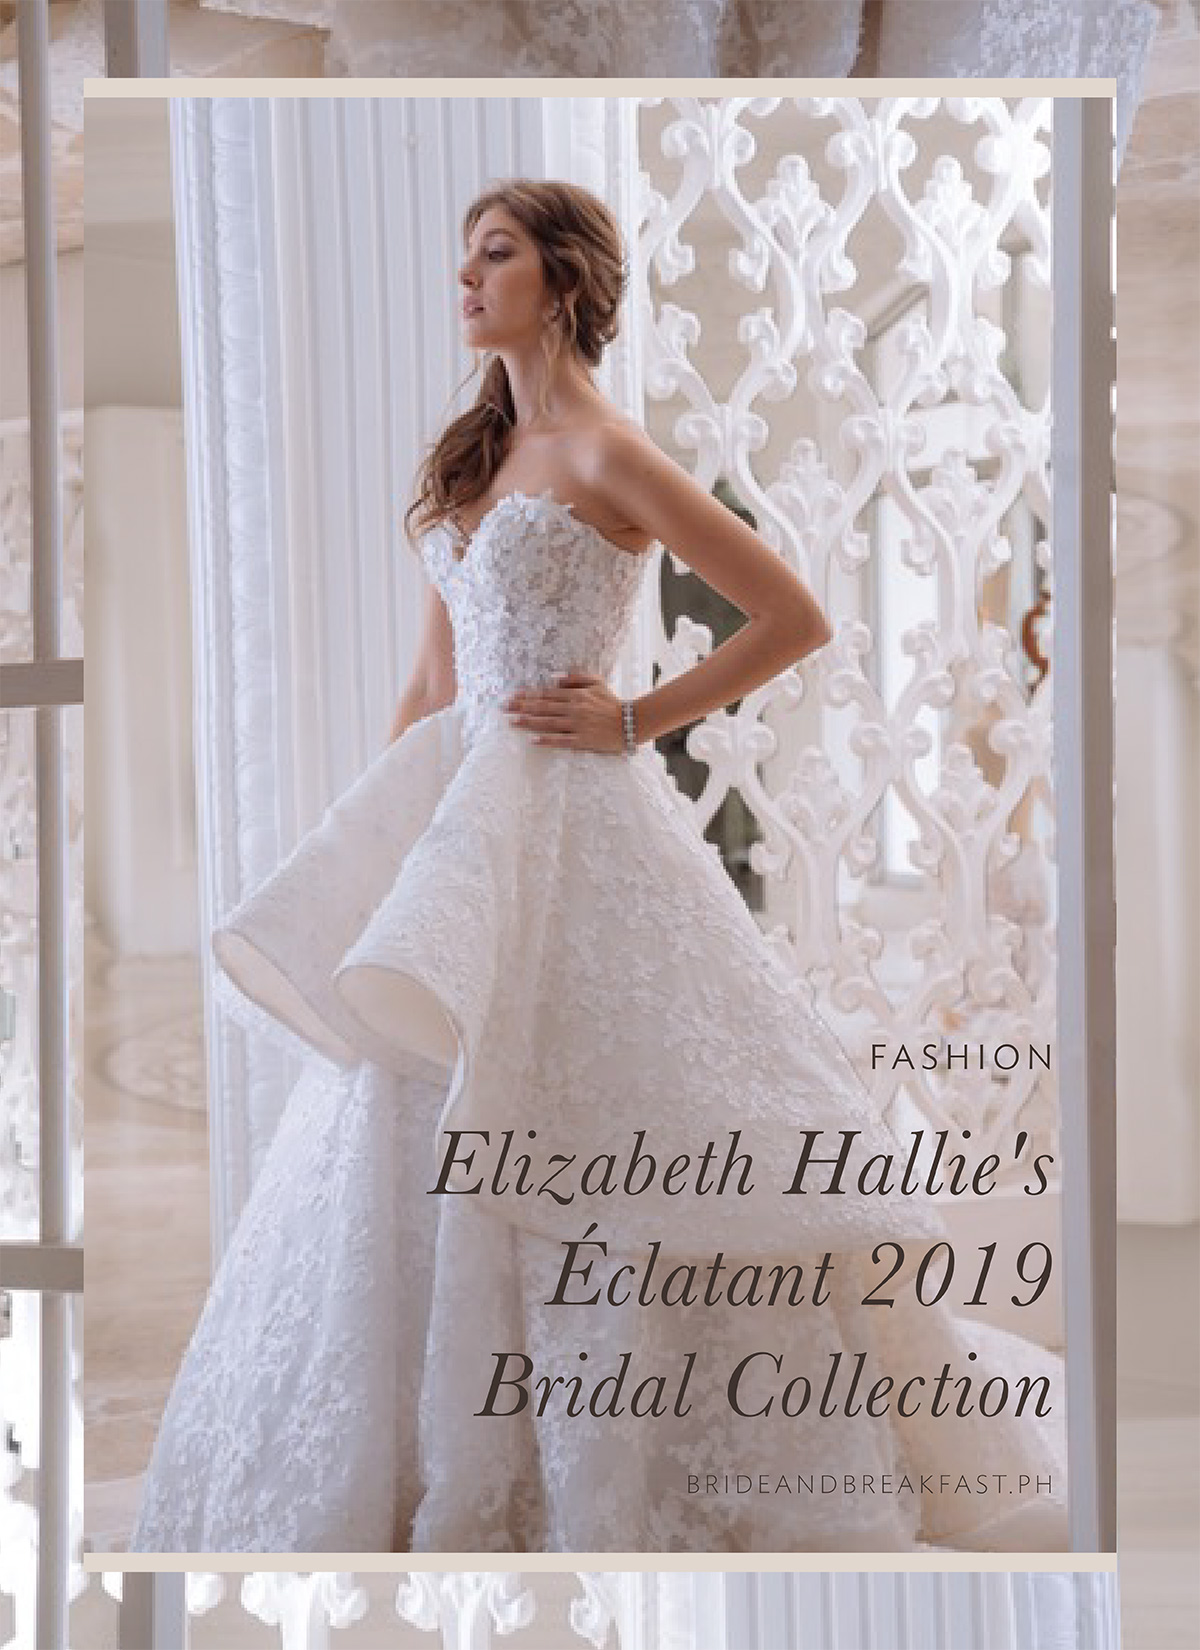 Elizabeth Hallie's Éclatant 2019 Bridal Collection